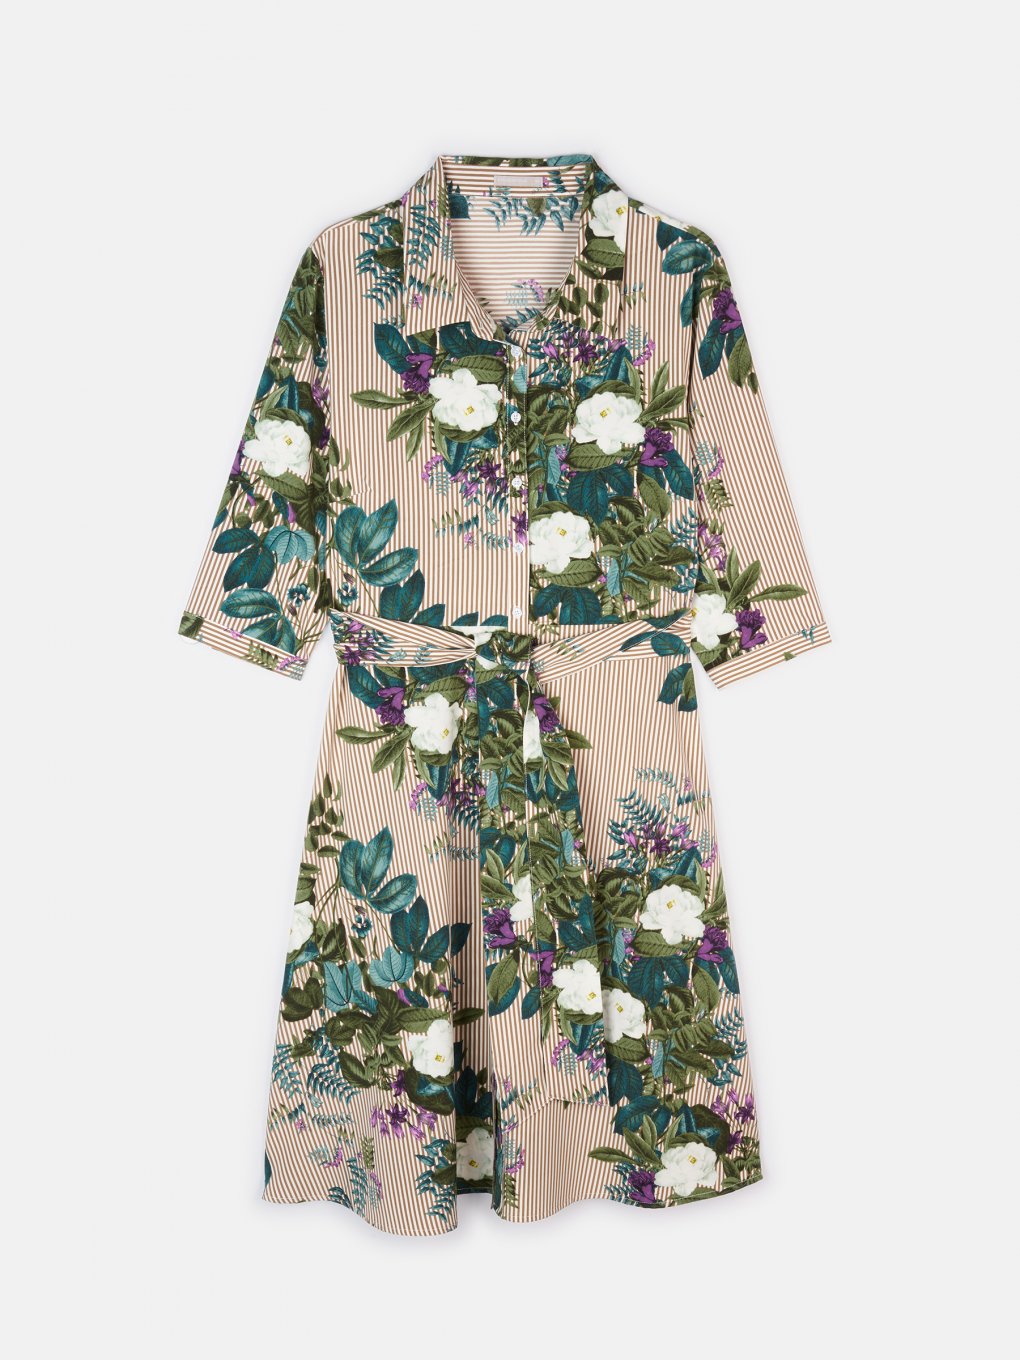 Plus size floral shirt dress